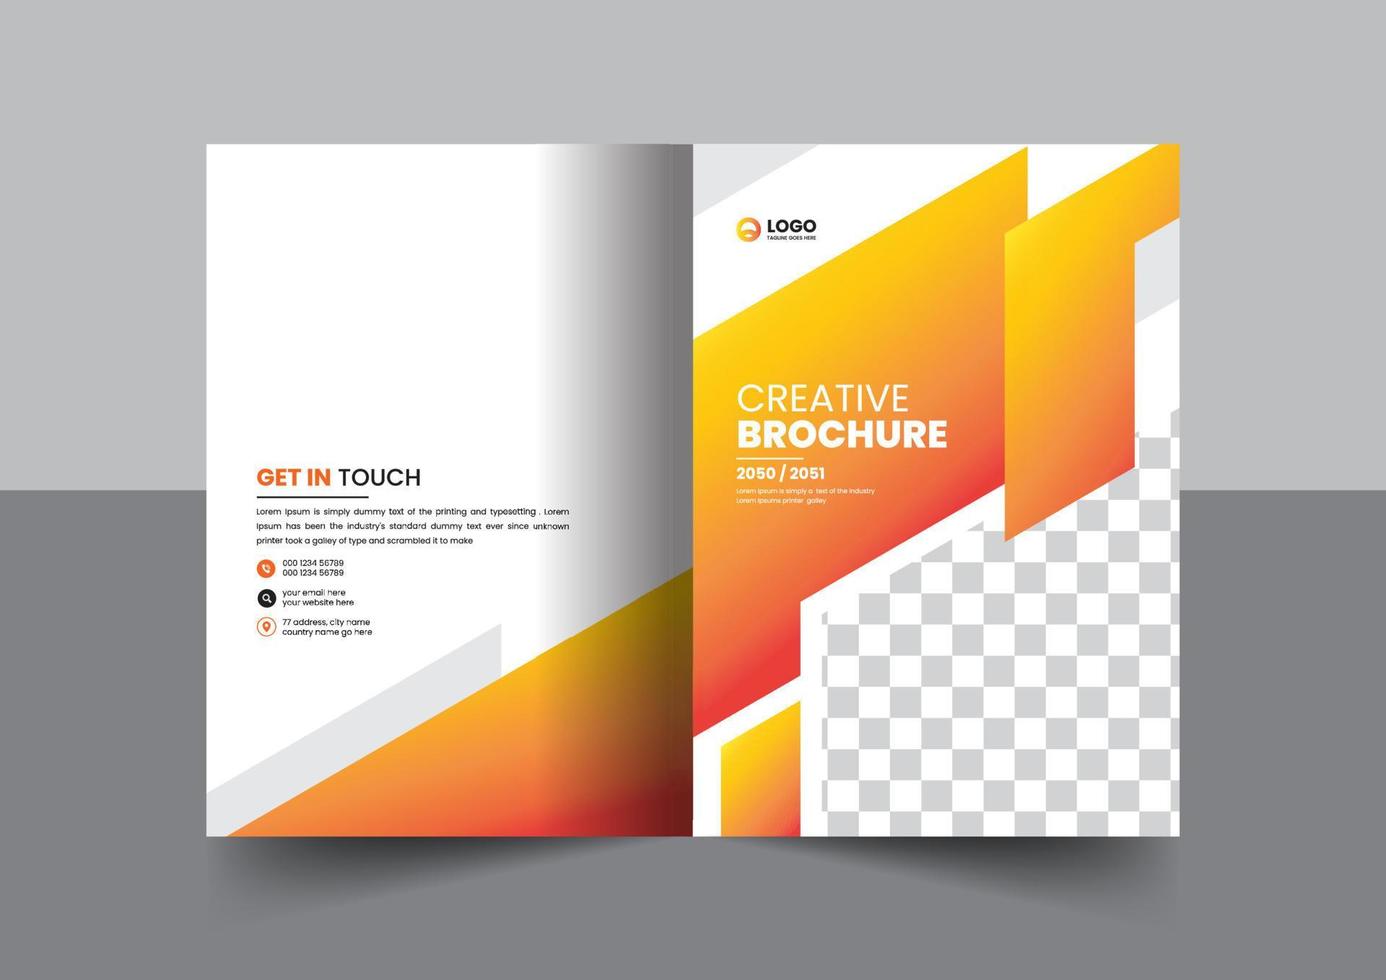 brochura de perfil da empresa corporativa relatório anual livreto proposta design de conceito de layout de página de capa vetor